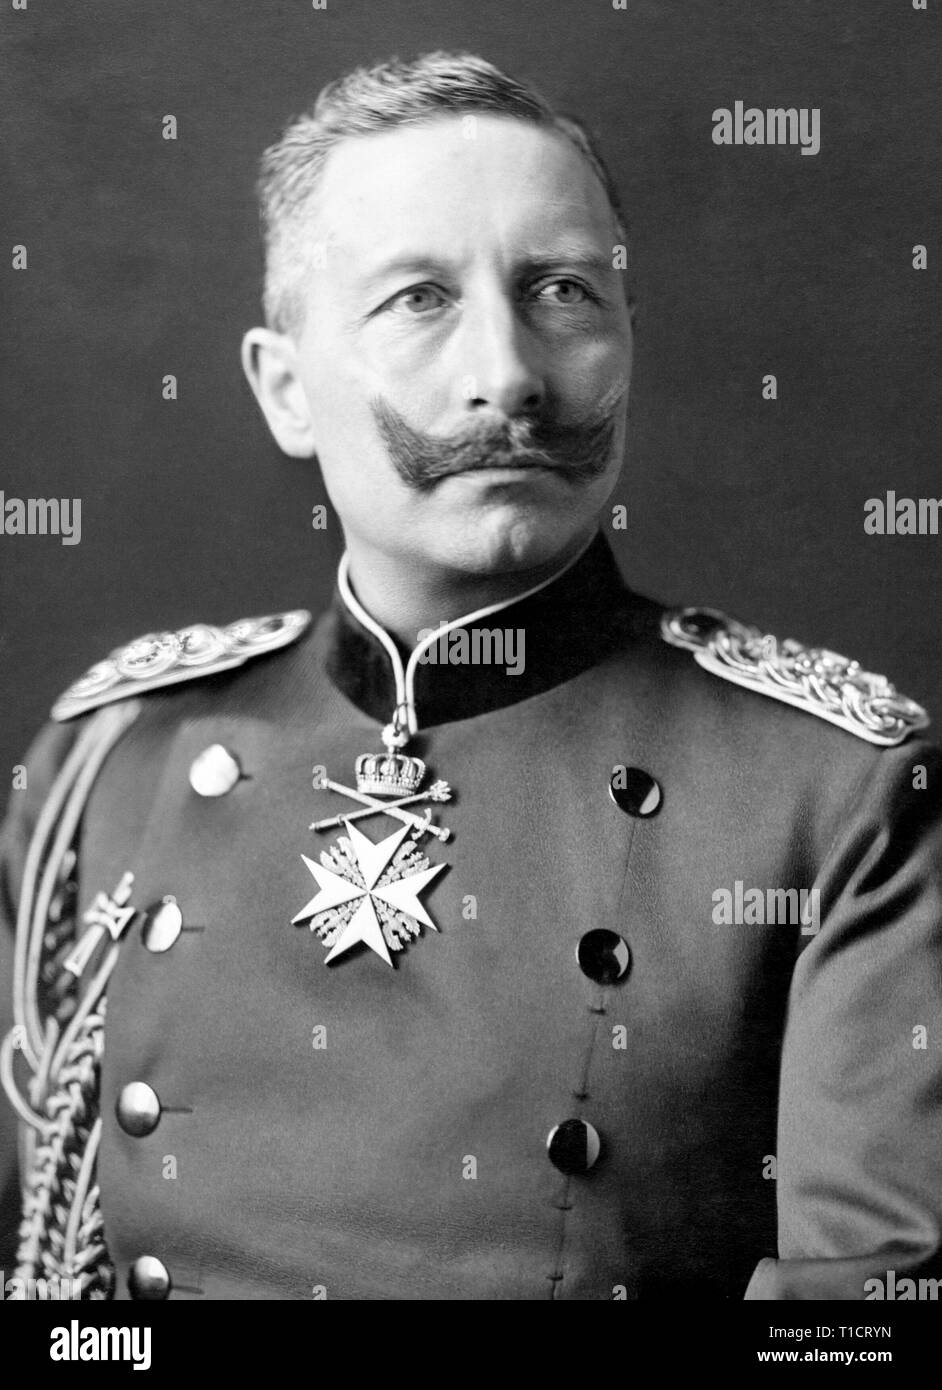 El Kaiser Wilhelm II, Wilhelm II (1859 - 1941) último emperador alemán (Kaiser) y el Rey de Prusia, reinando desde el 15 de junio de 1888 hasta su abdicación el 9 de noviembre de 1918, poco antes de la derrota de Alemania en la Primera Guerra Mundial Foto de stock